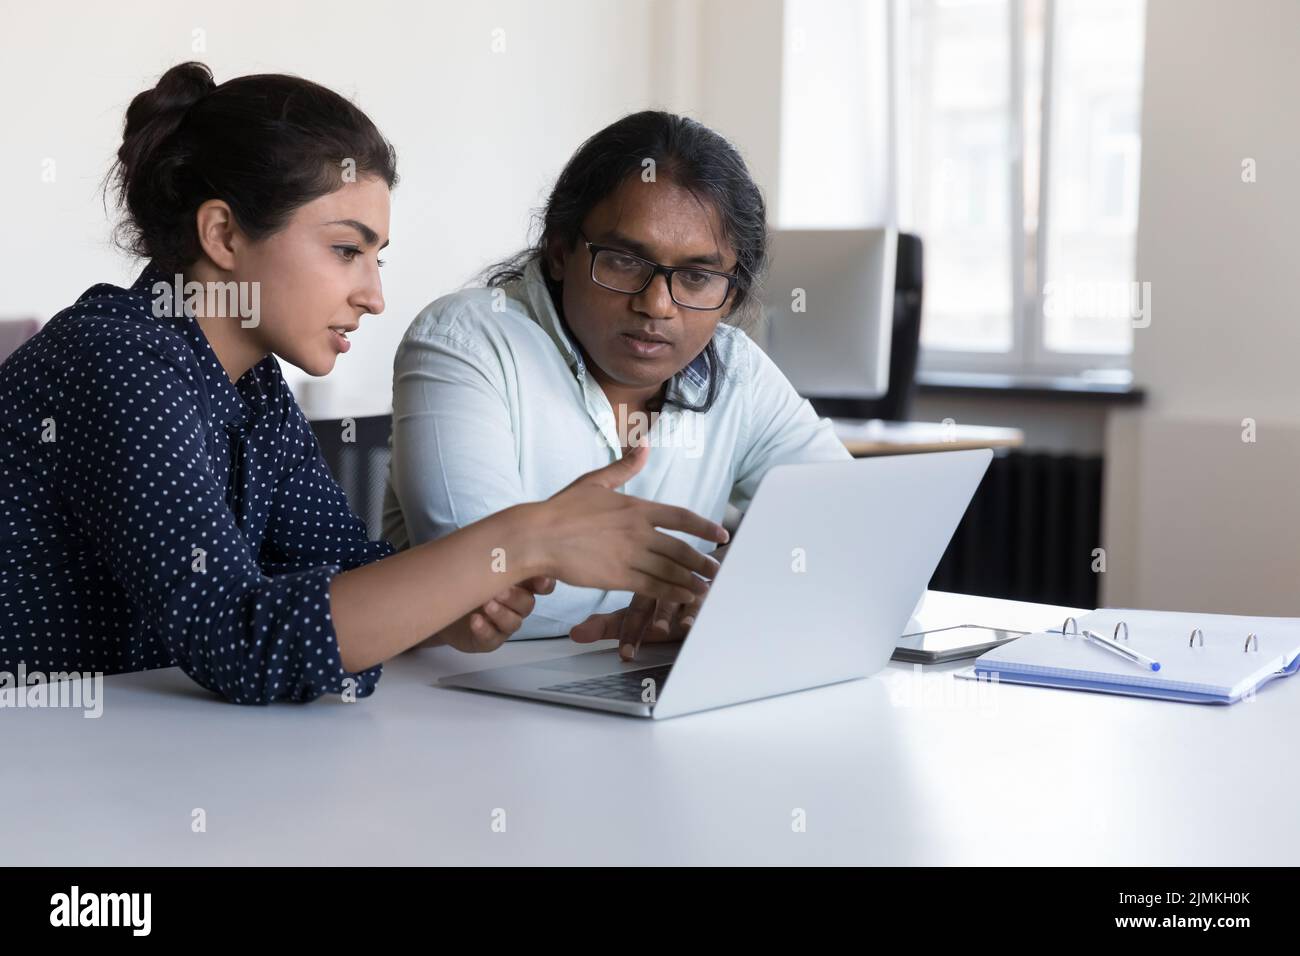 Los trabajadores indios se sientan en el escritorio cerca del ordenador portátil para hablar sobre el nuevo software Foto de stock